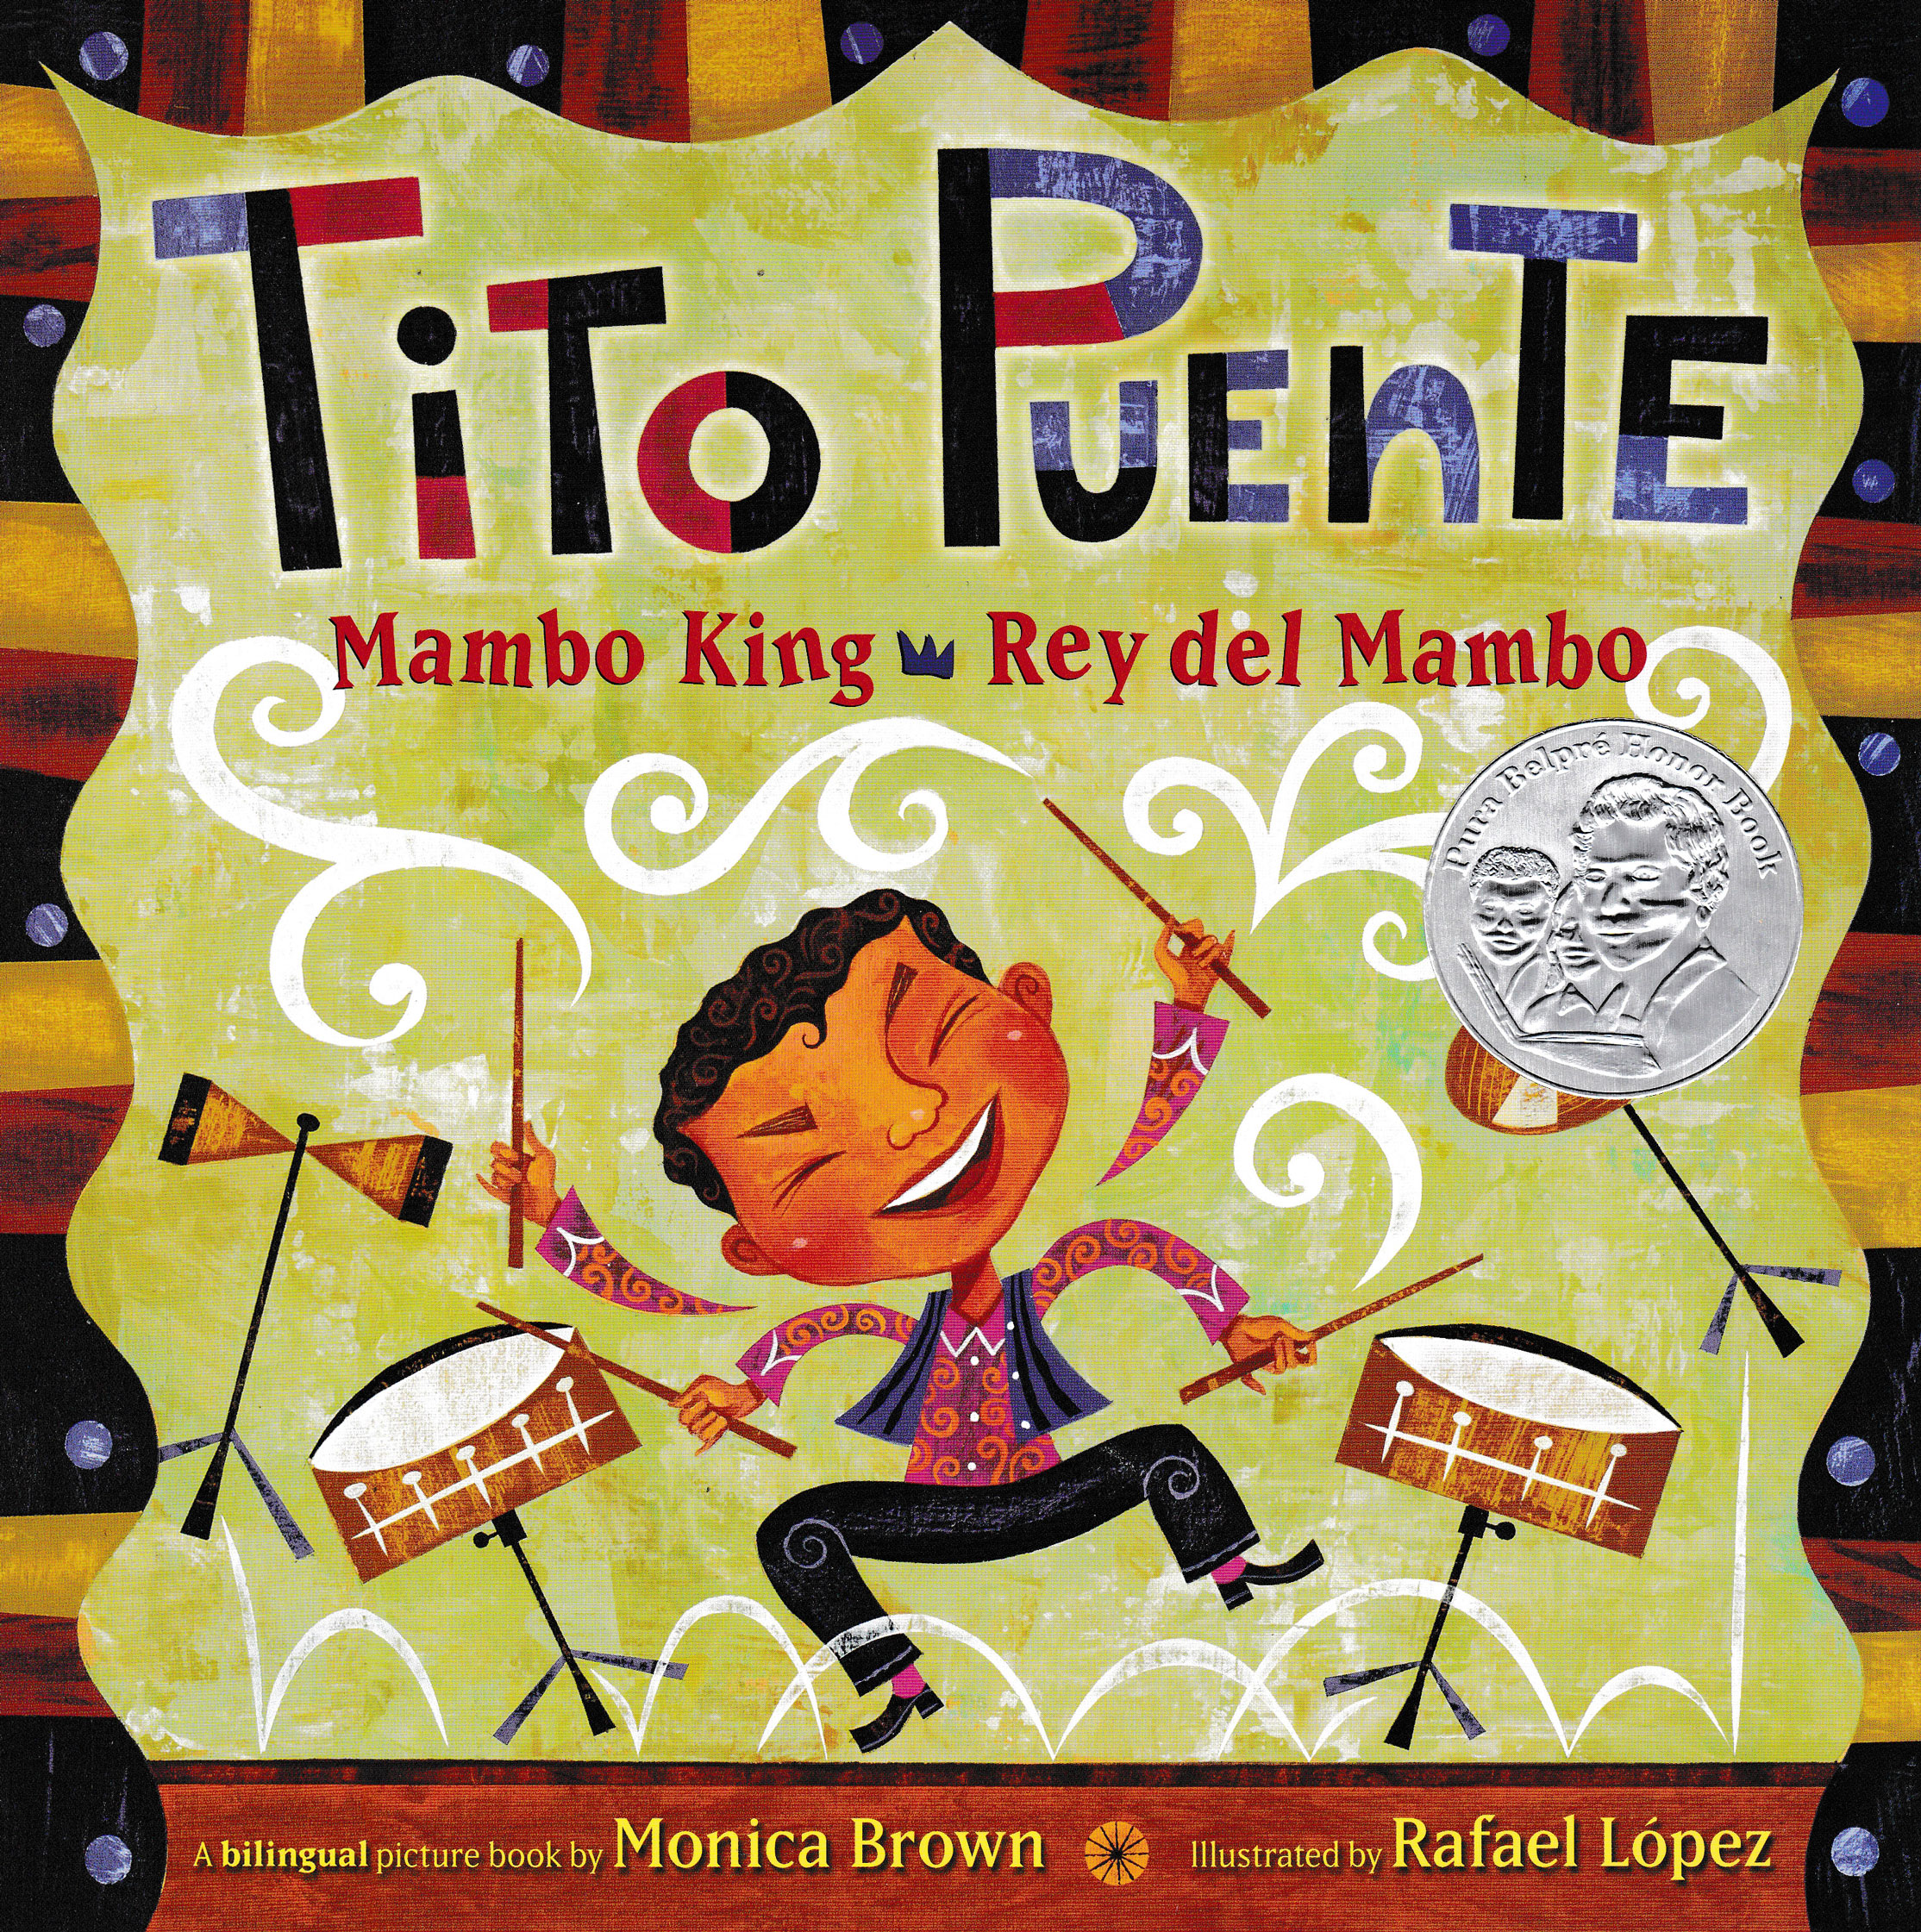 Tito Puente Mambo King/Rey del Mambo Bilingual Picture Book